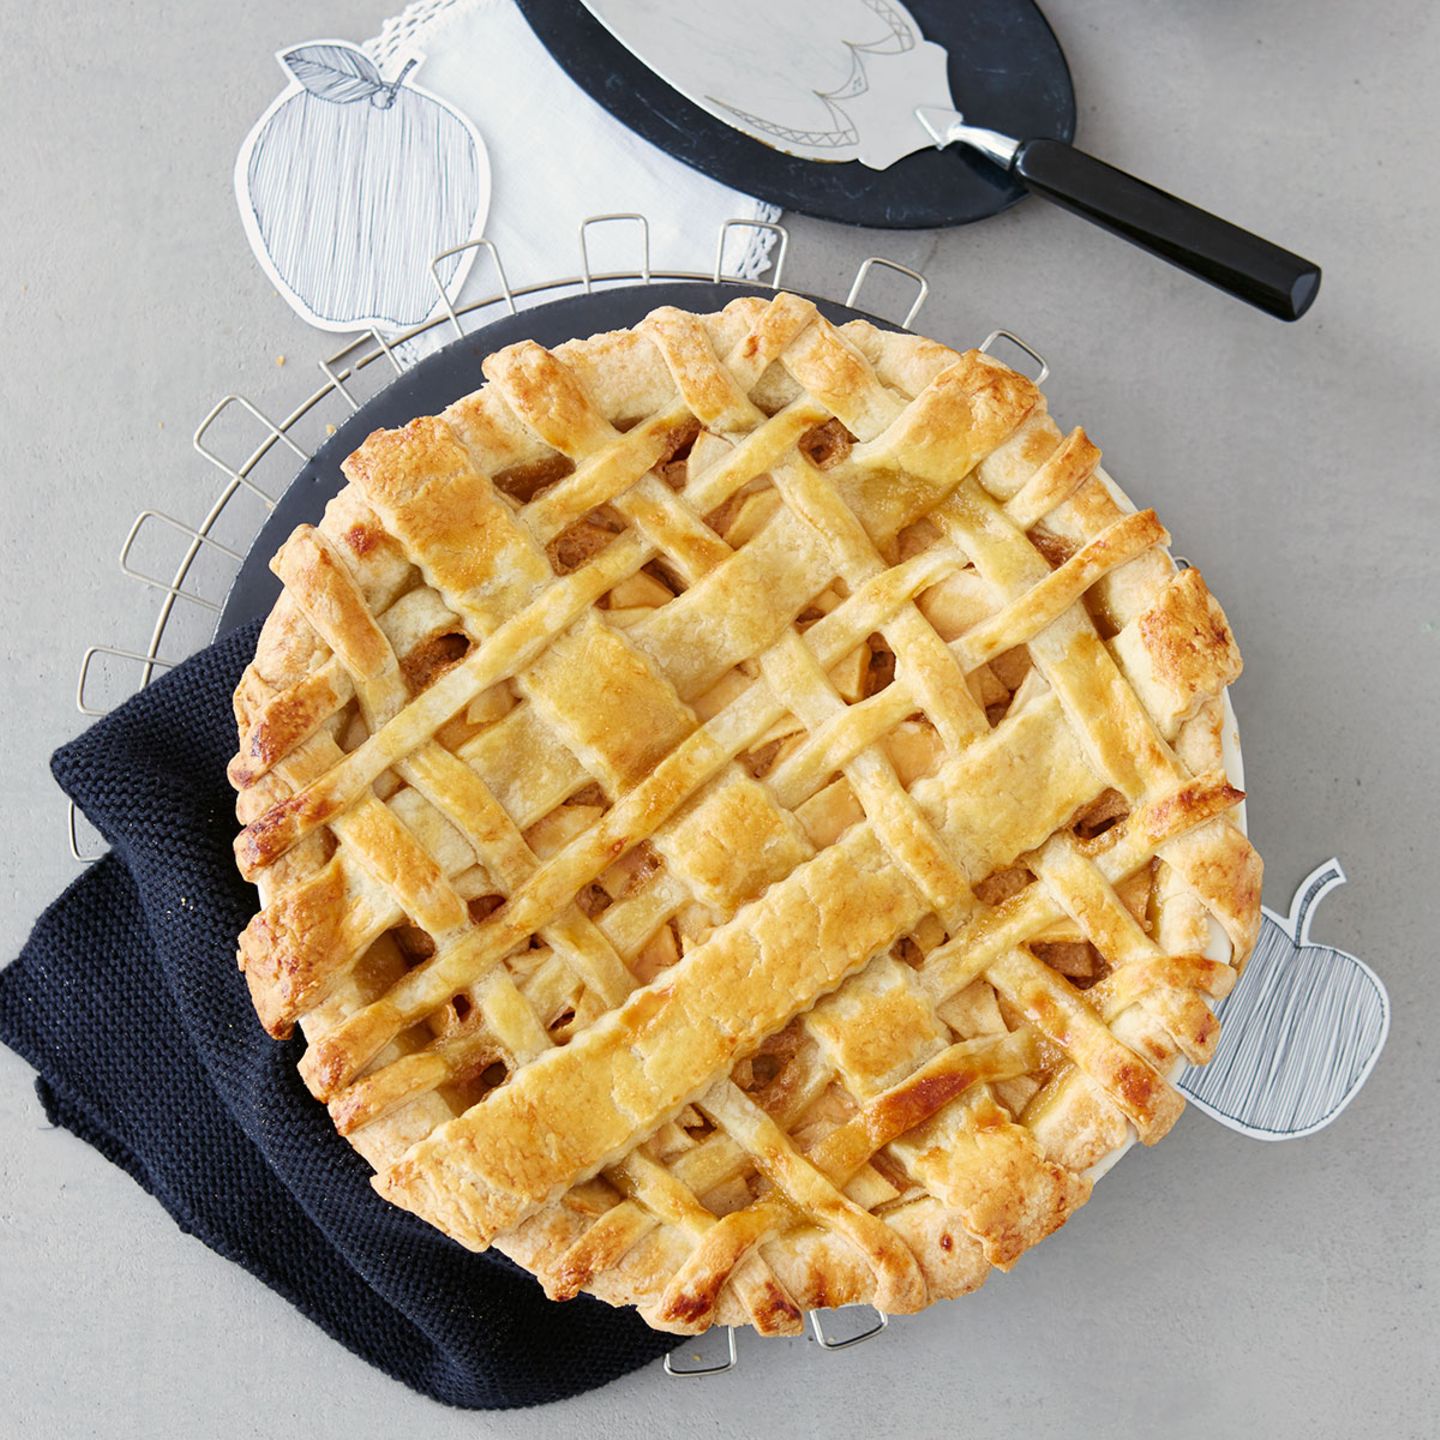 Rezept: Apple Pie mit Salz-Karamell